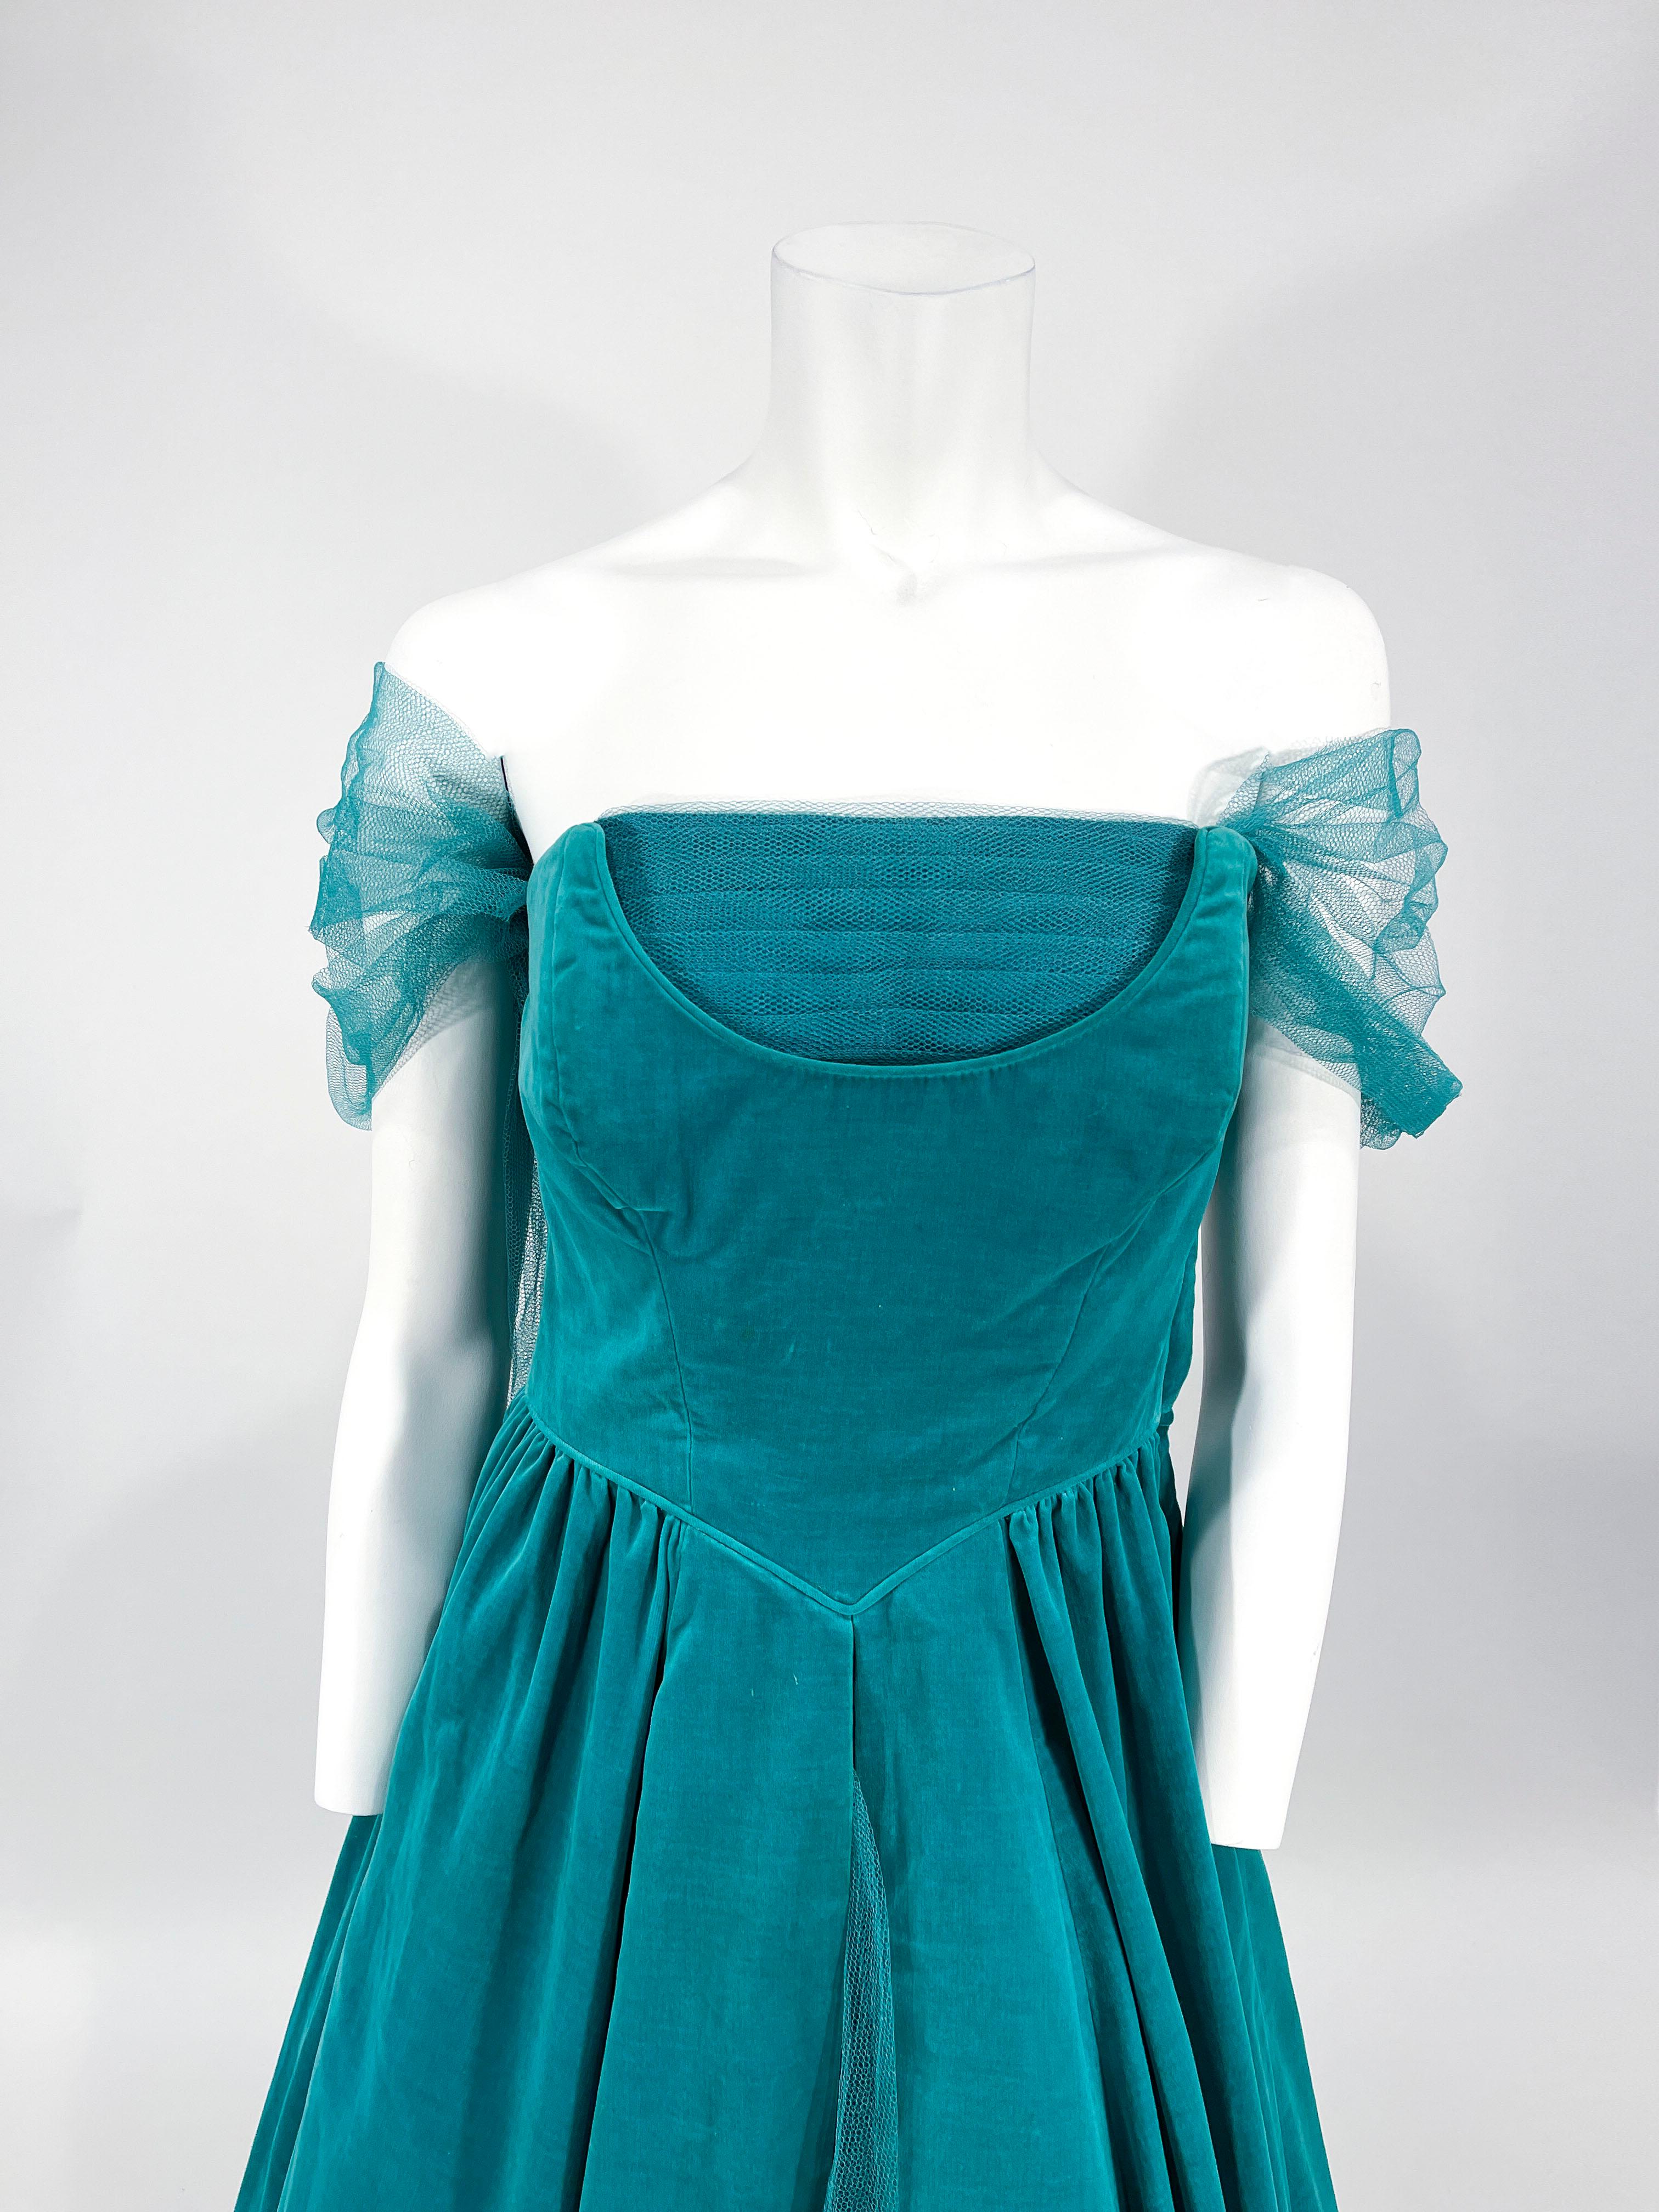 1950er Jahre: ärmelloses Partykleid aus grünem Baumwollsamt in Teelänge mit modifiziertem Ausschnitt, verziert mit einer Platte aus plissiertem Tüll. Am Halsausschnitt ist ein pastellfarbener Tüll angebracht, der an den Armen und auf der Rückseite